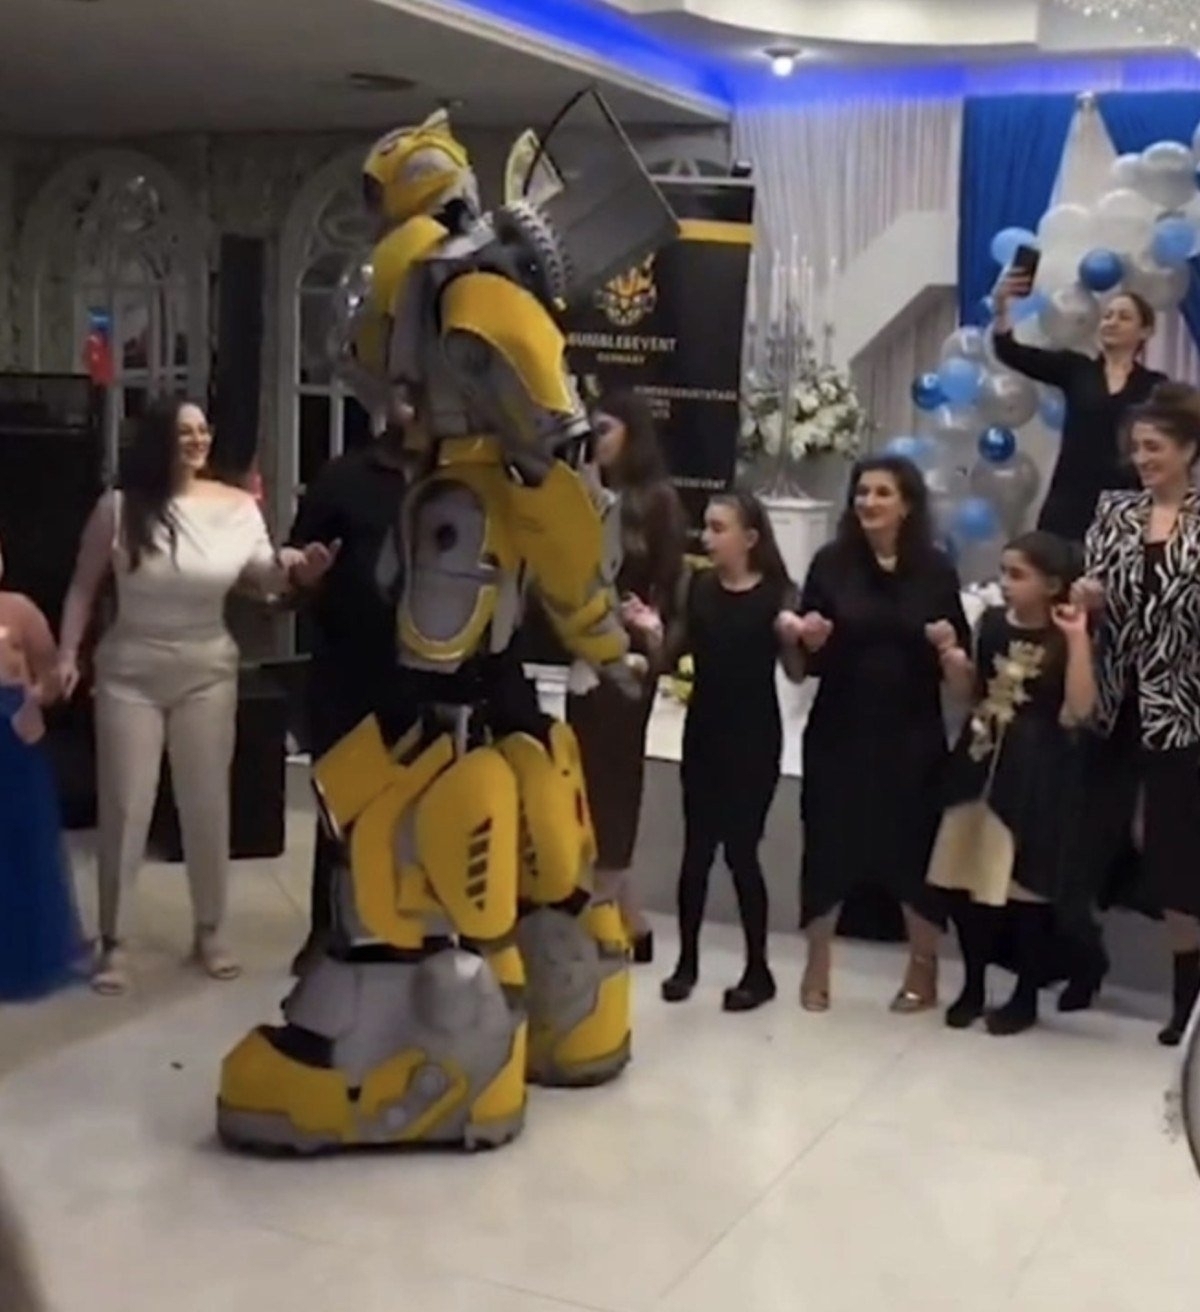 Transformers Karakteri Bumblebee, Sünnet Düğününde Halay Başı Oldu!